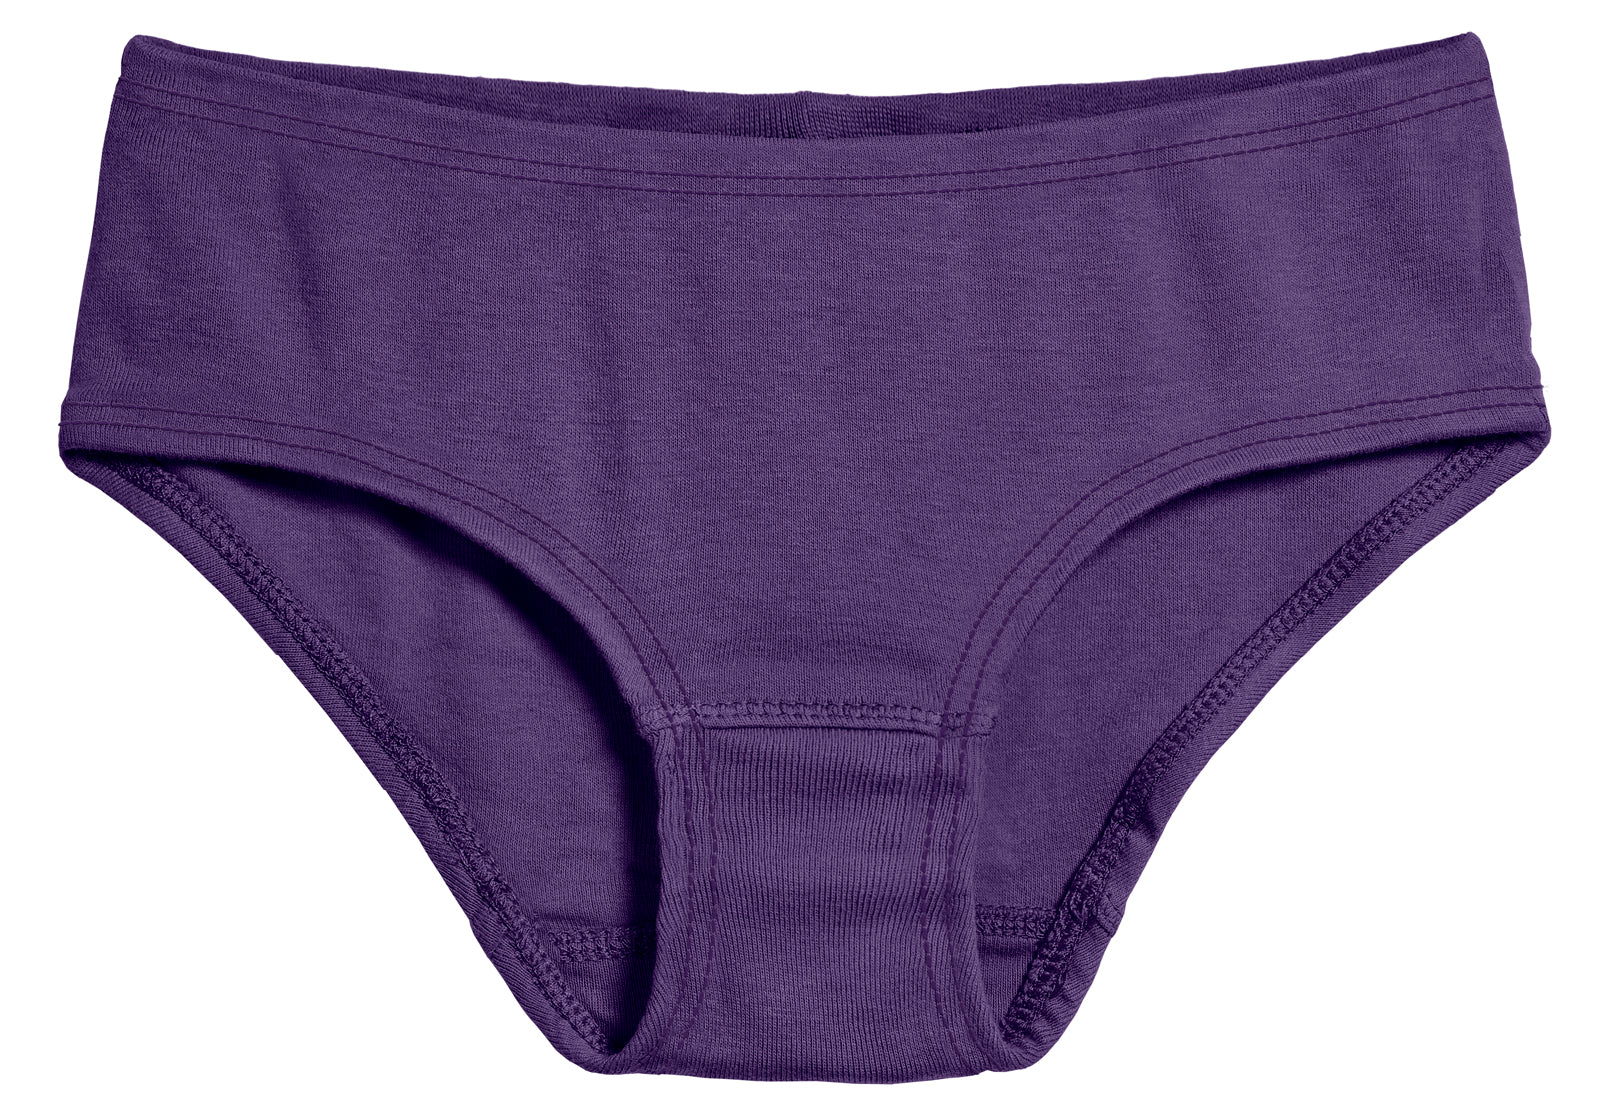 Girl's brief underwear